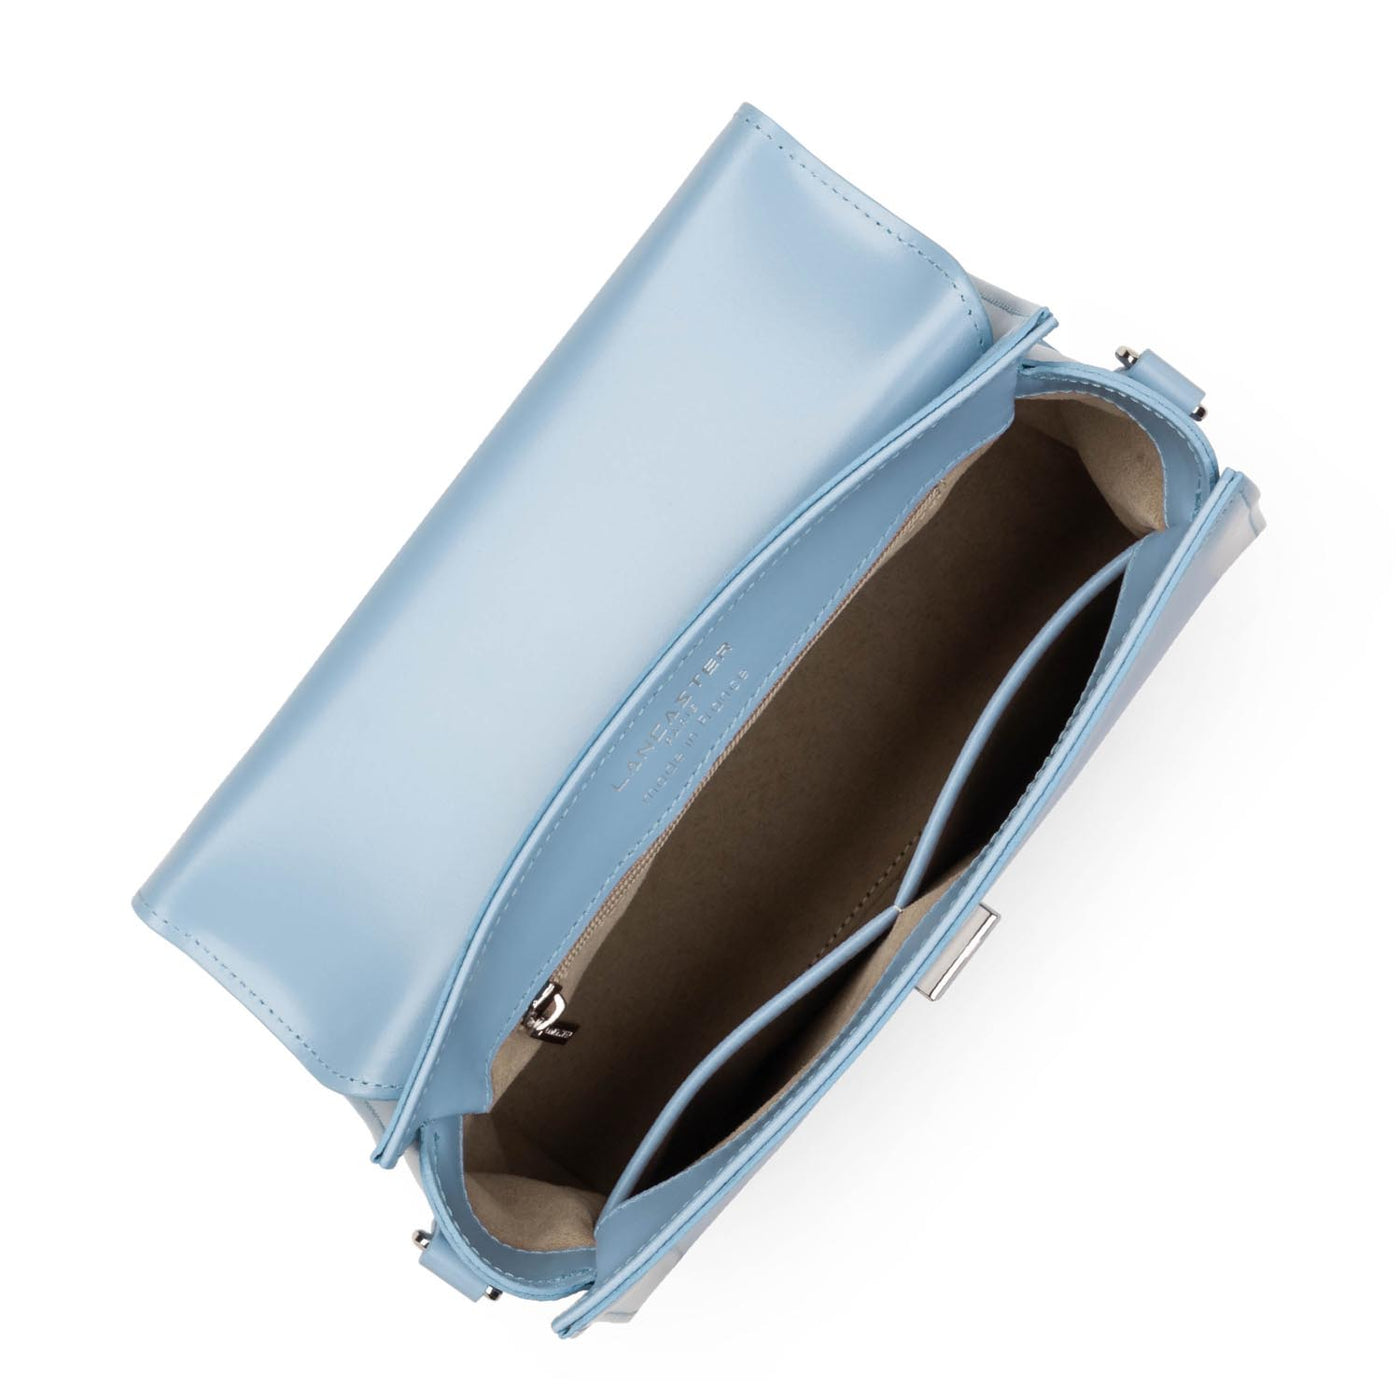 m handbag - suave even #couleur_bleu-ciel